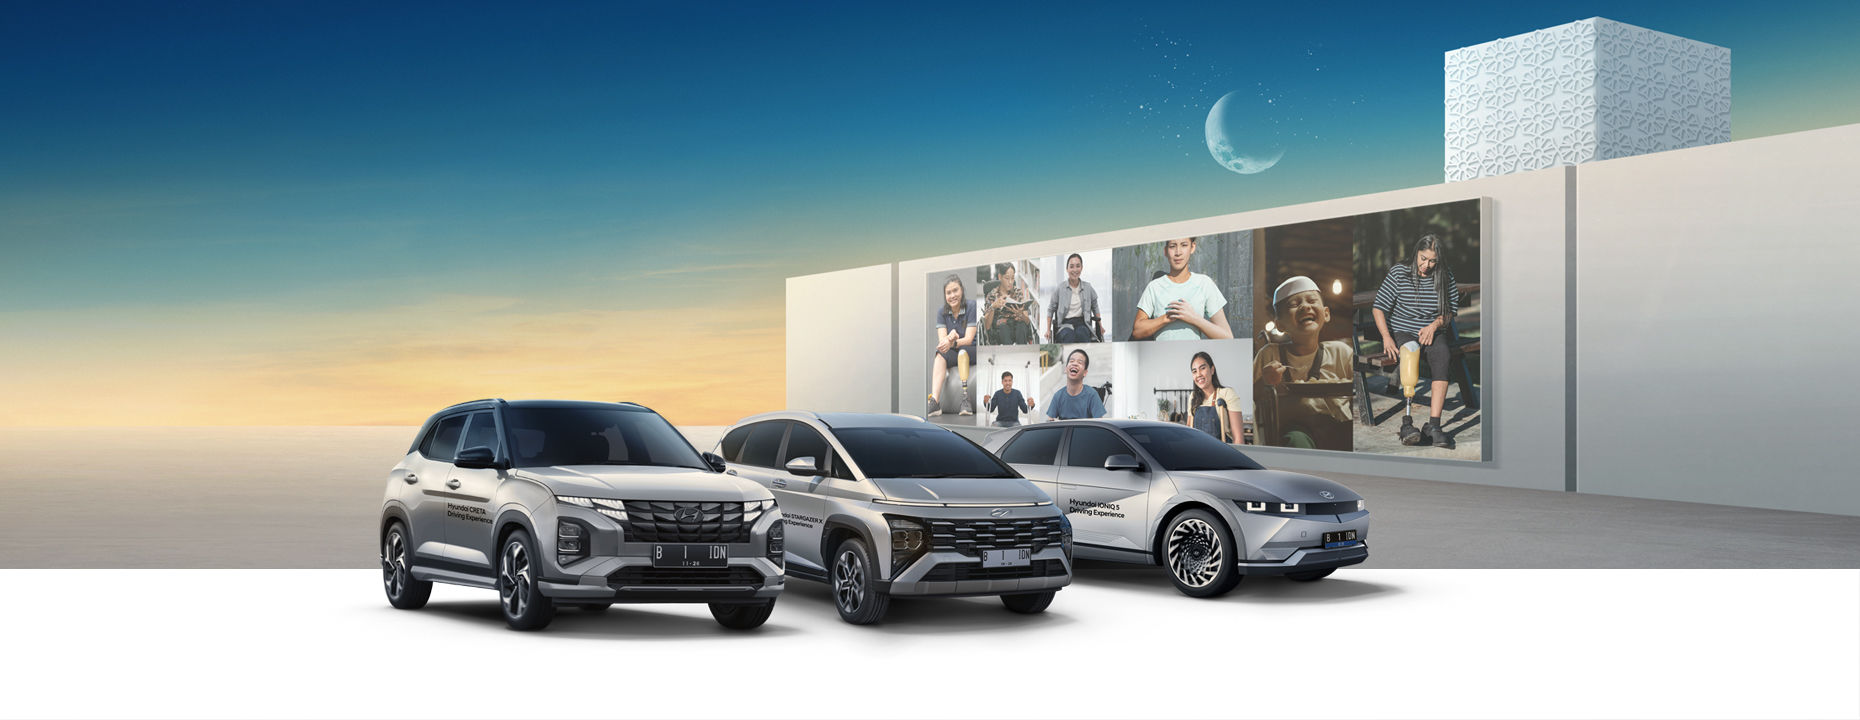 Hyundai Mobility Exhibition Centre